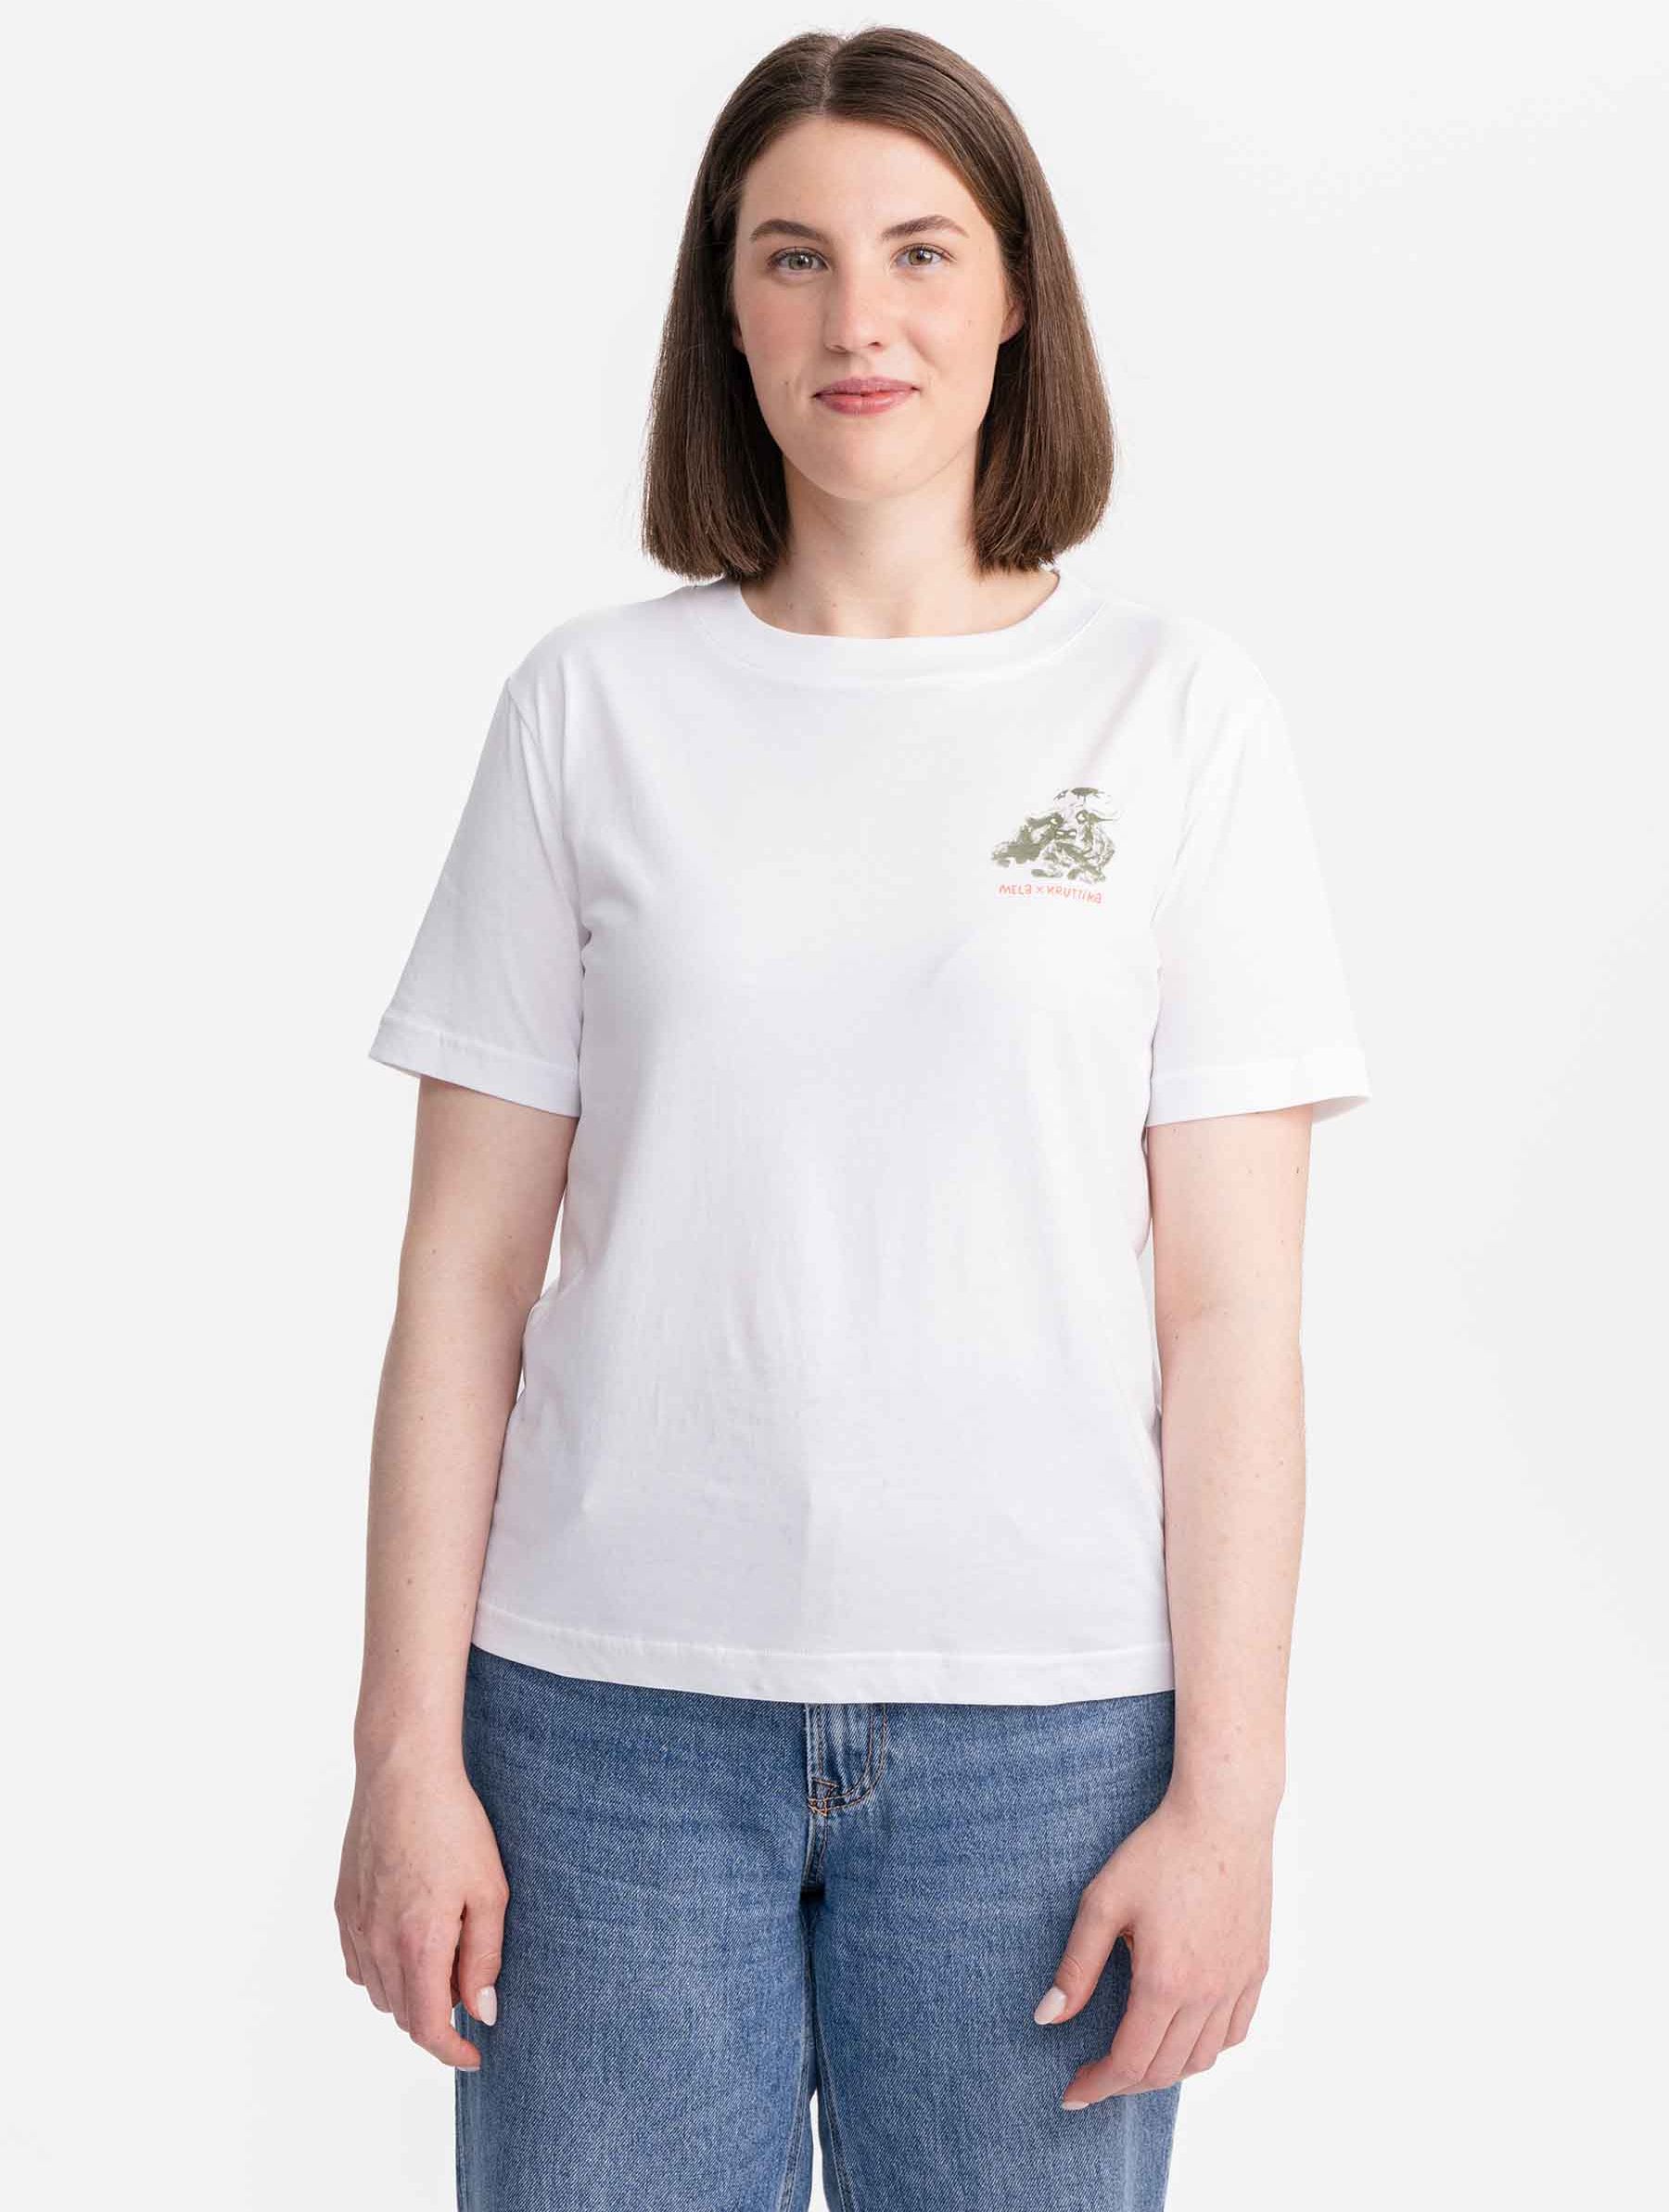 T-Shirt Khira Kruttika weiß / print water ox